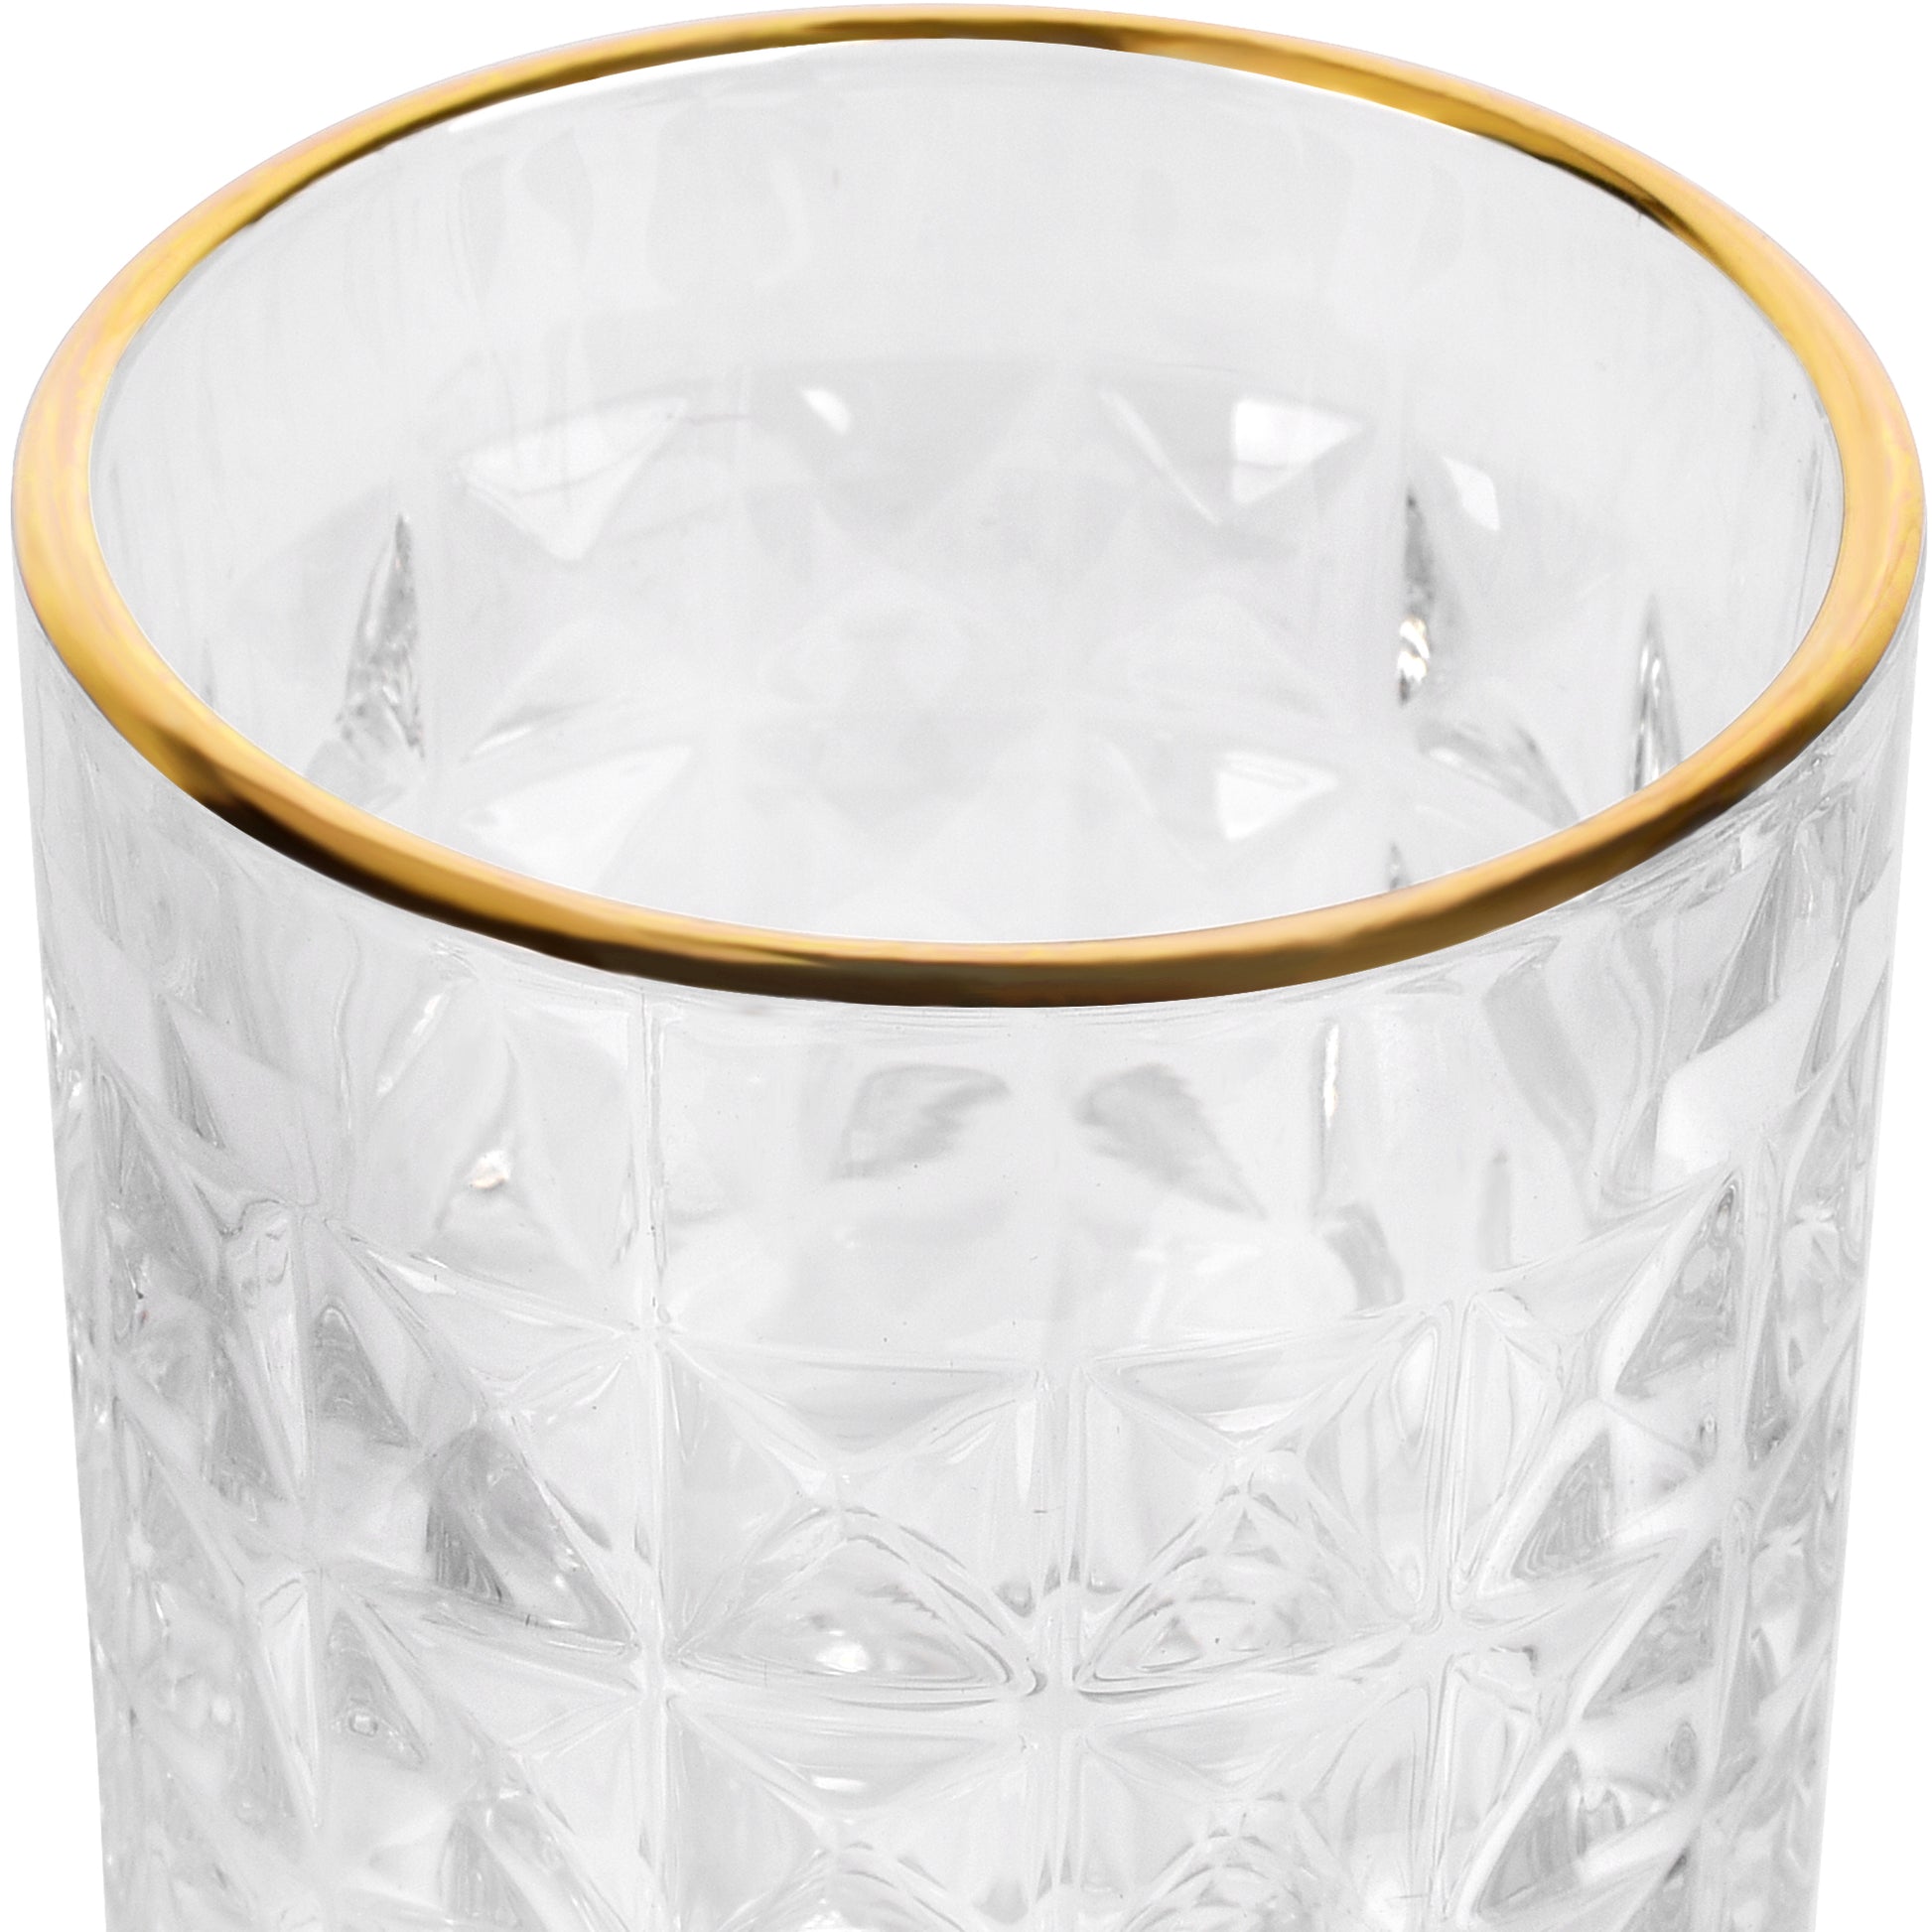 kristall-latte-macchiato-glas-goldrand-set